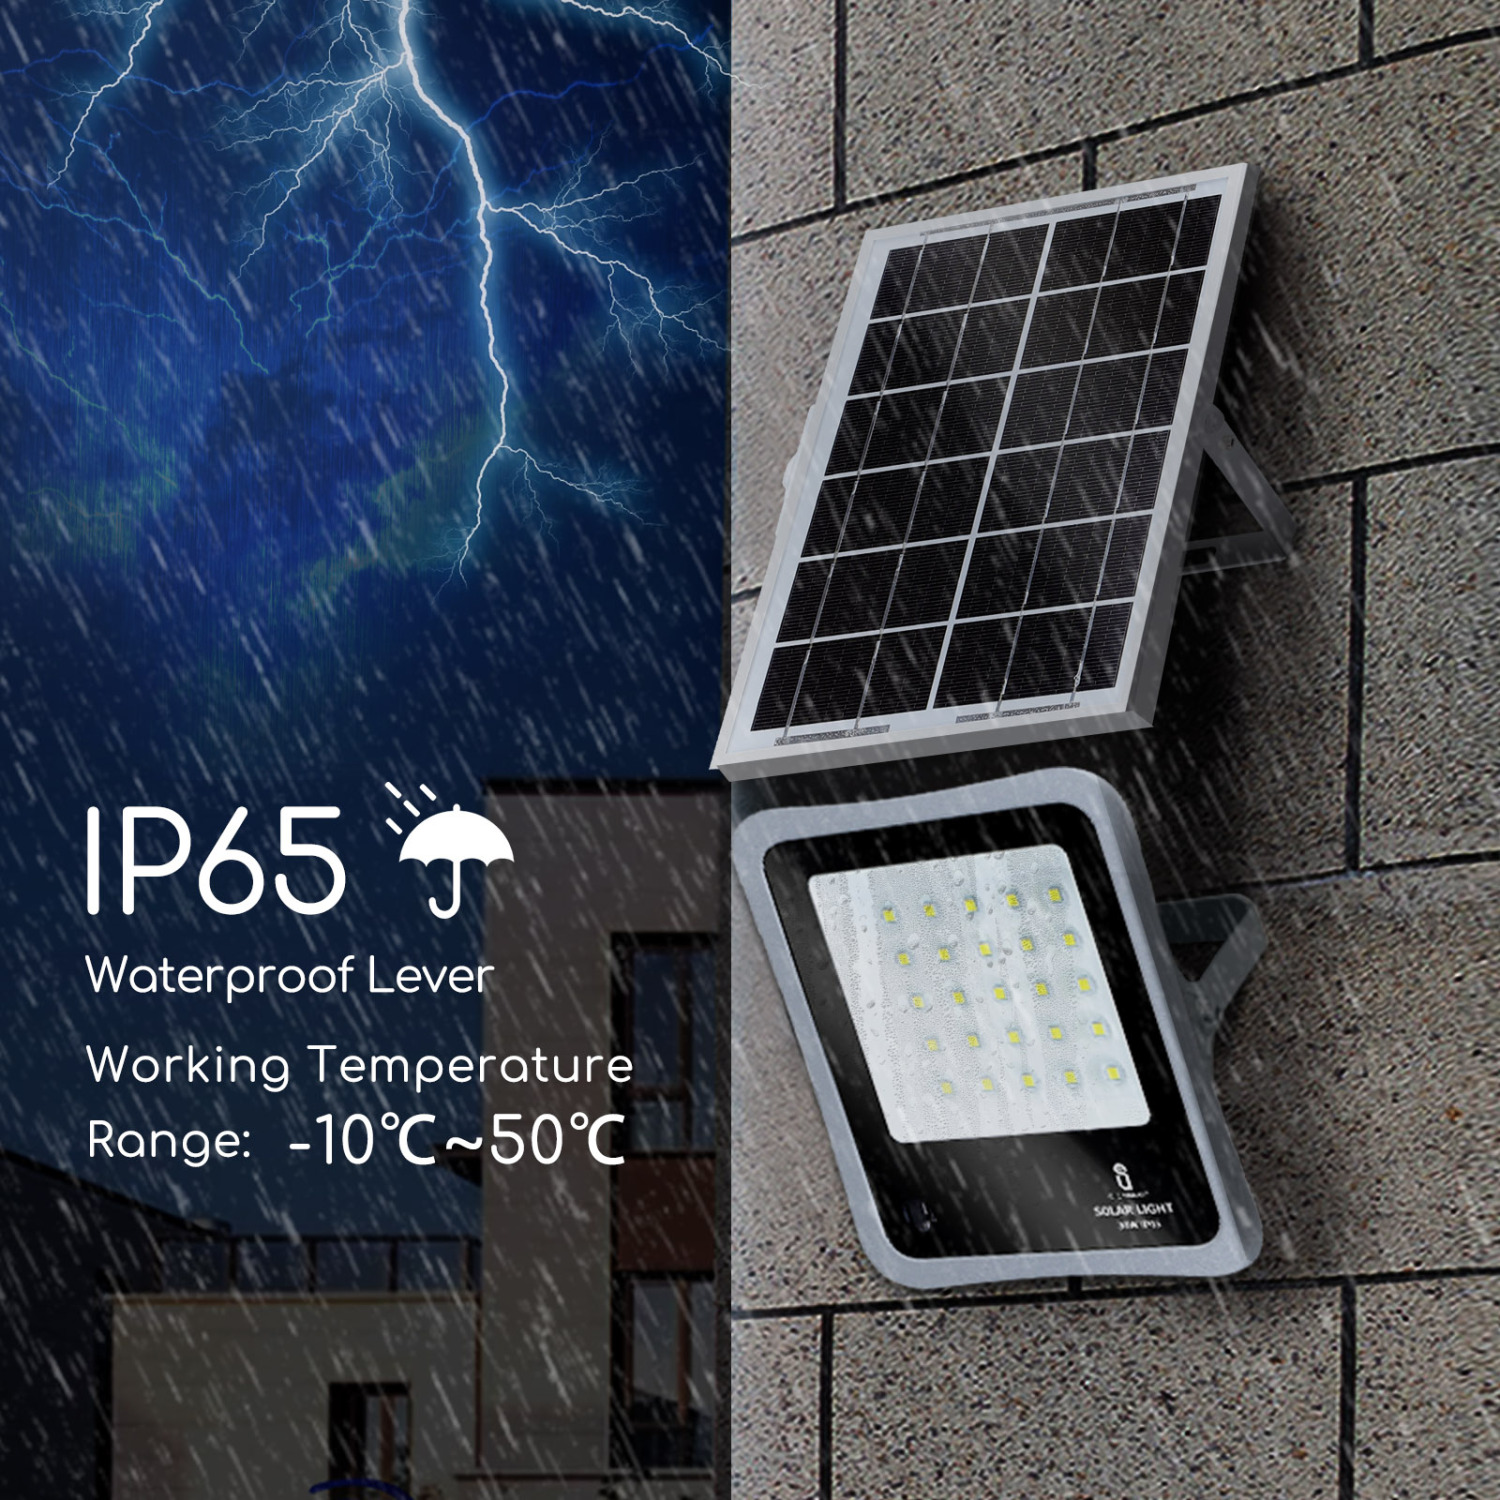 Aigostar - Faretto solare LED per esterni con telecomando da 30W, luce bianca 6500k. Faretto solare crepuscolare con funzione timer, IP65 resistenze alla pioggia